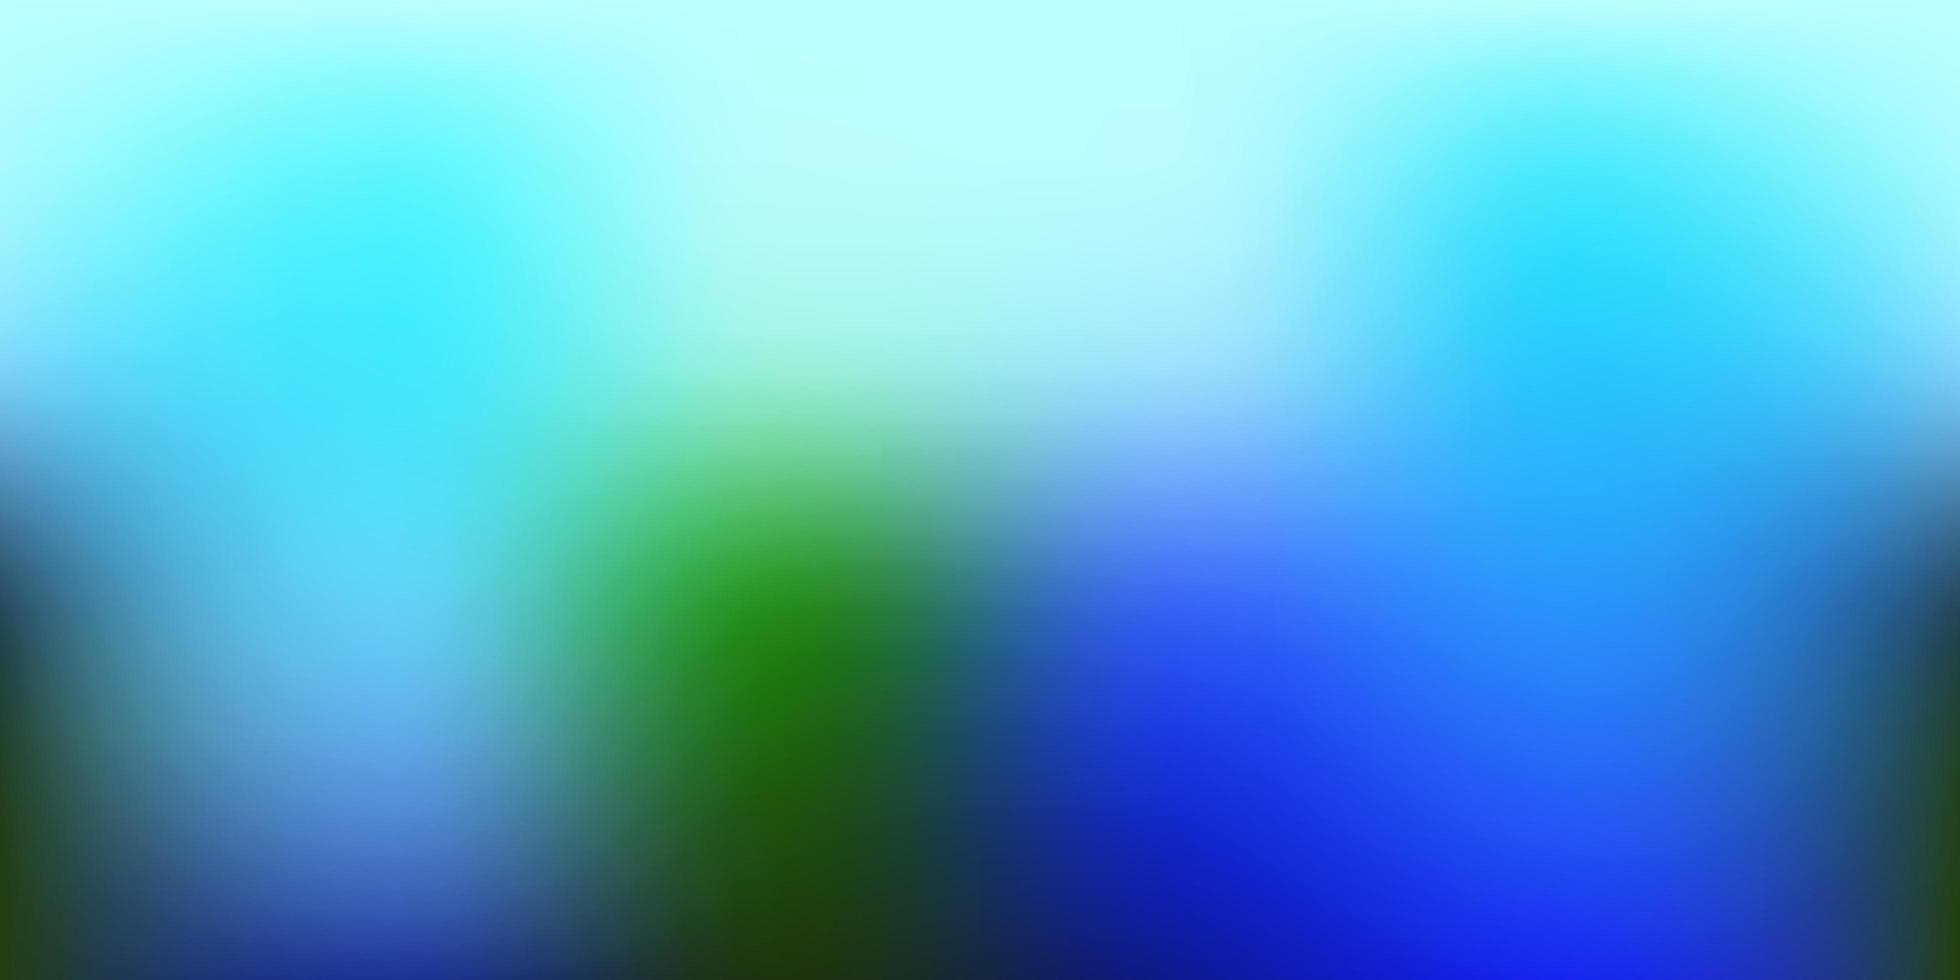 Light Blue, Green vector blurred texture.